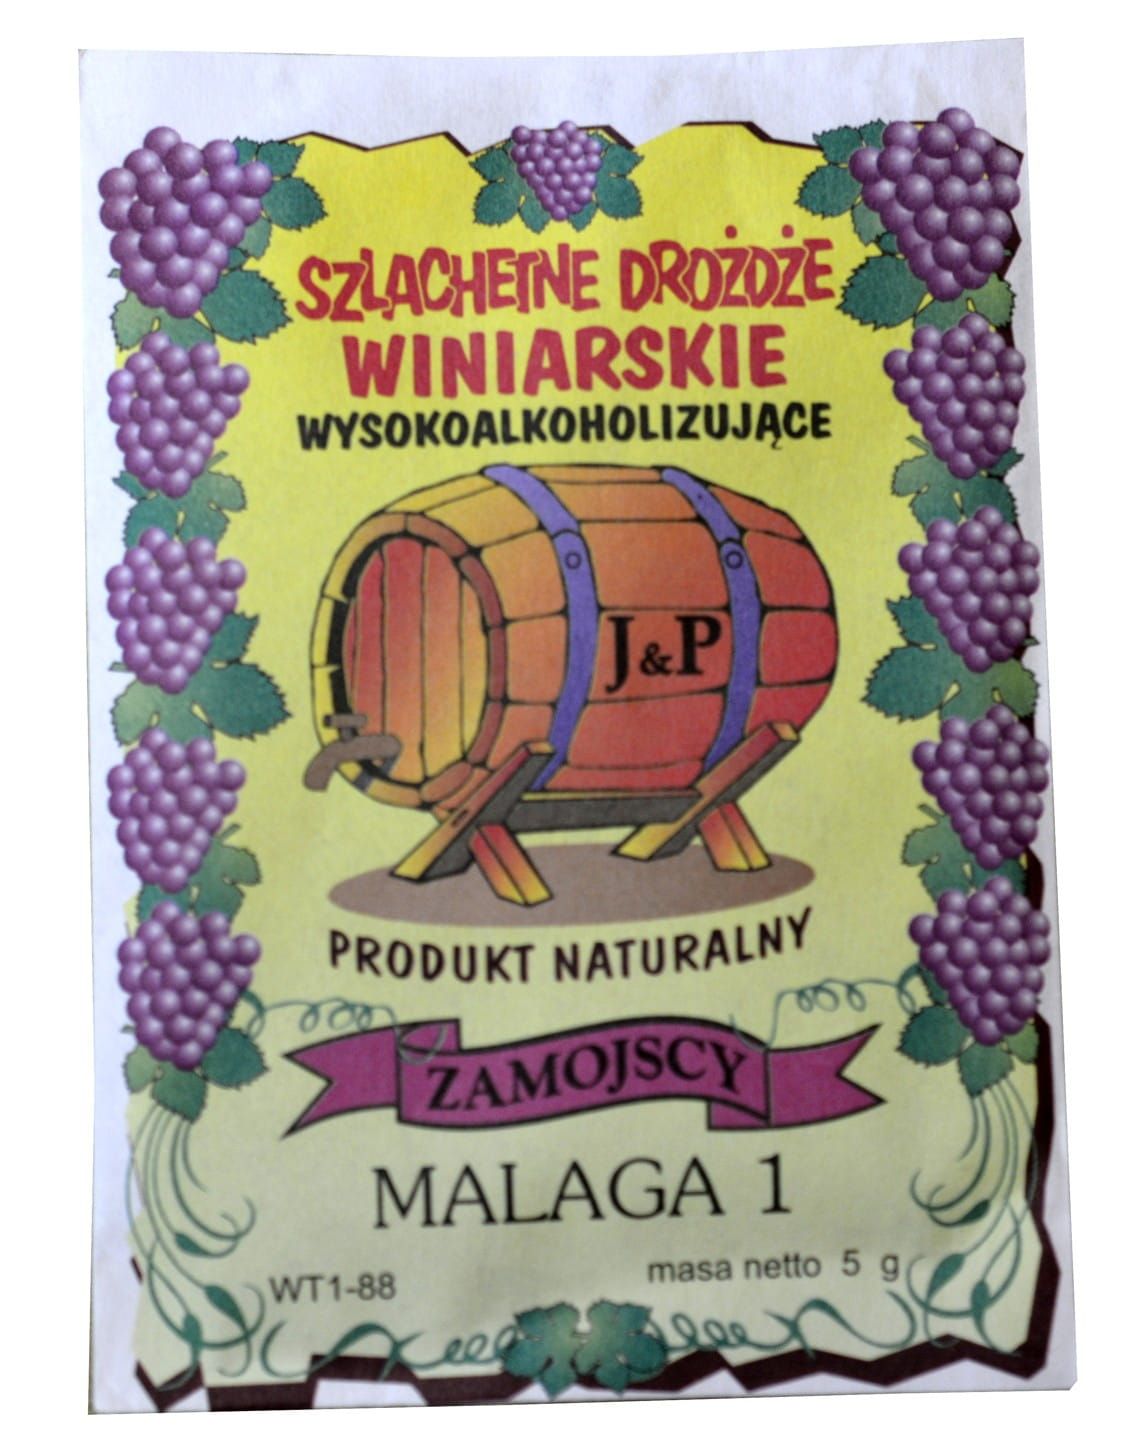 ZAMOJSCY drożdże winiarskie MALAGA1